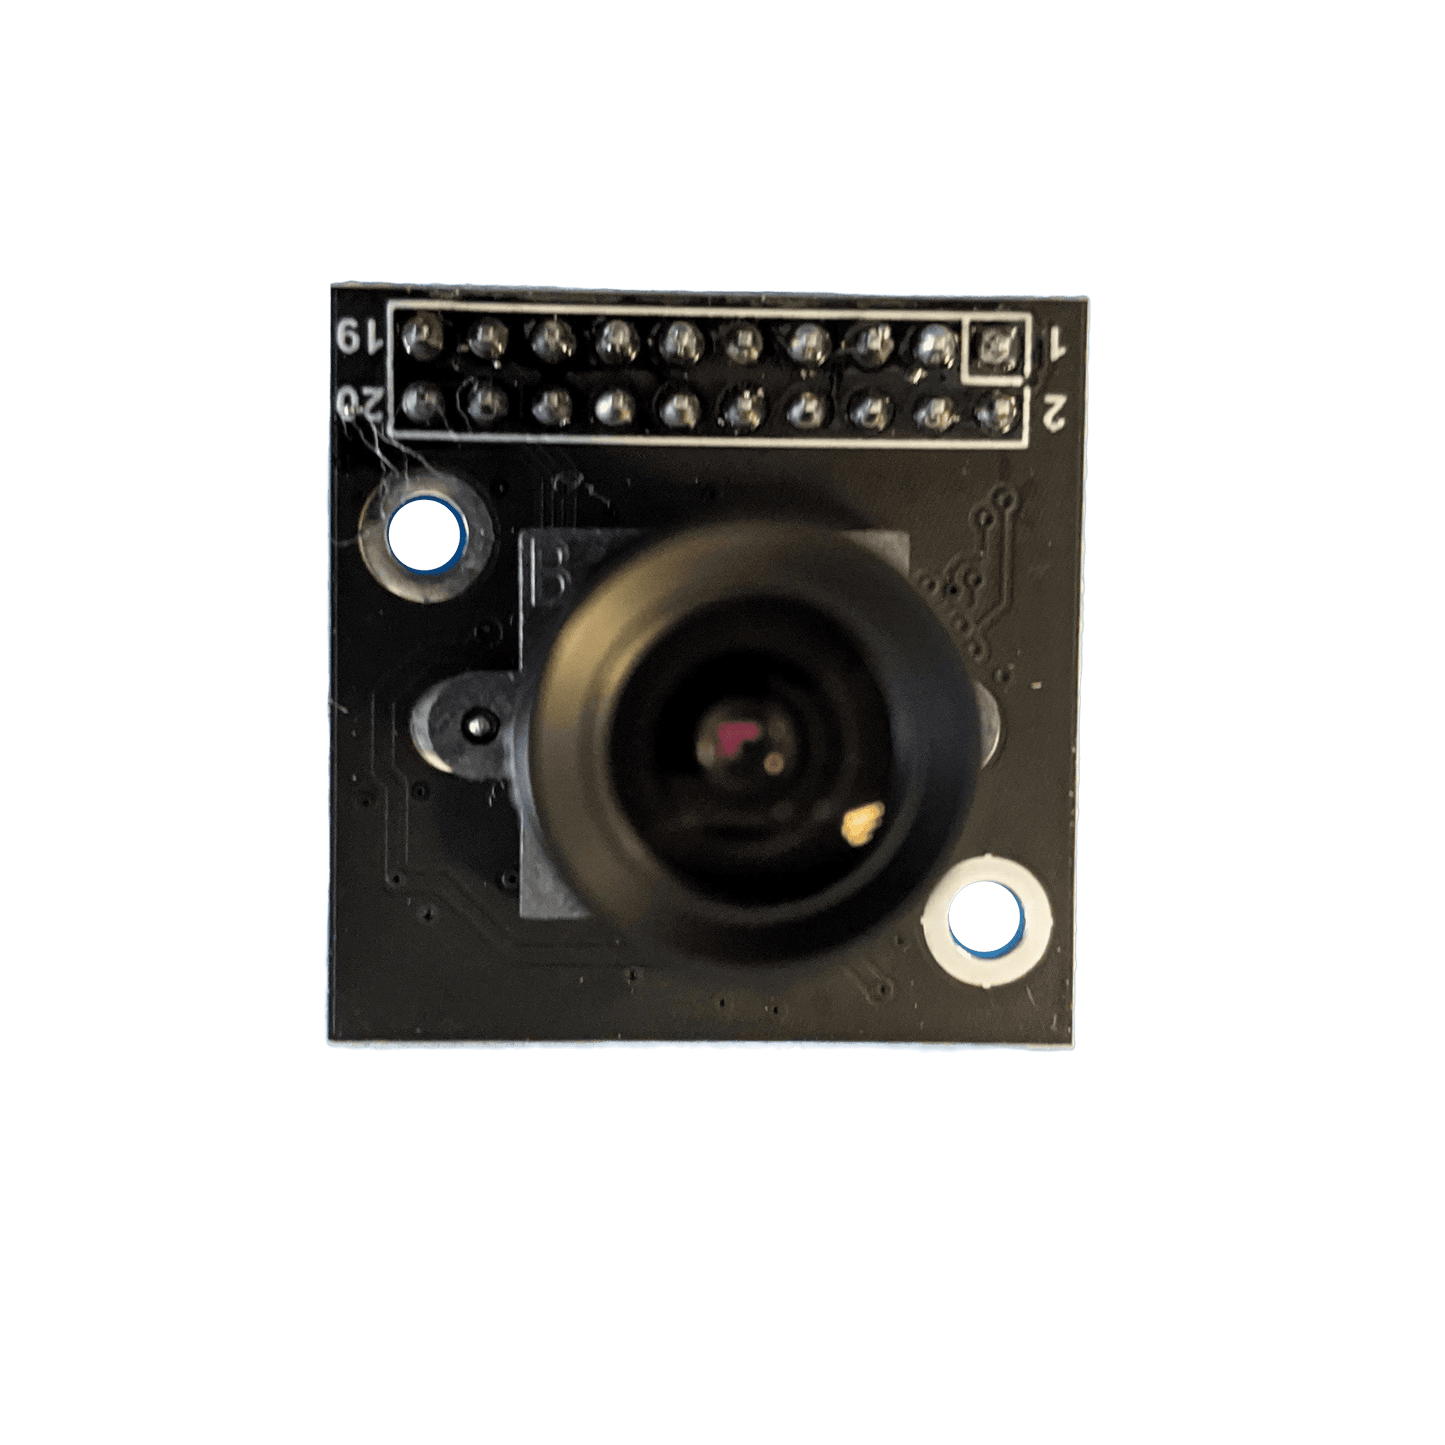 3MP Camera Breakout Board With 60 Degree FoV